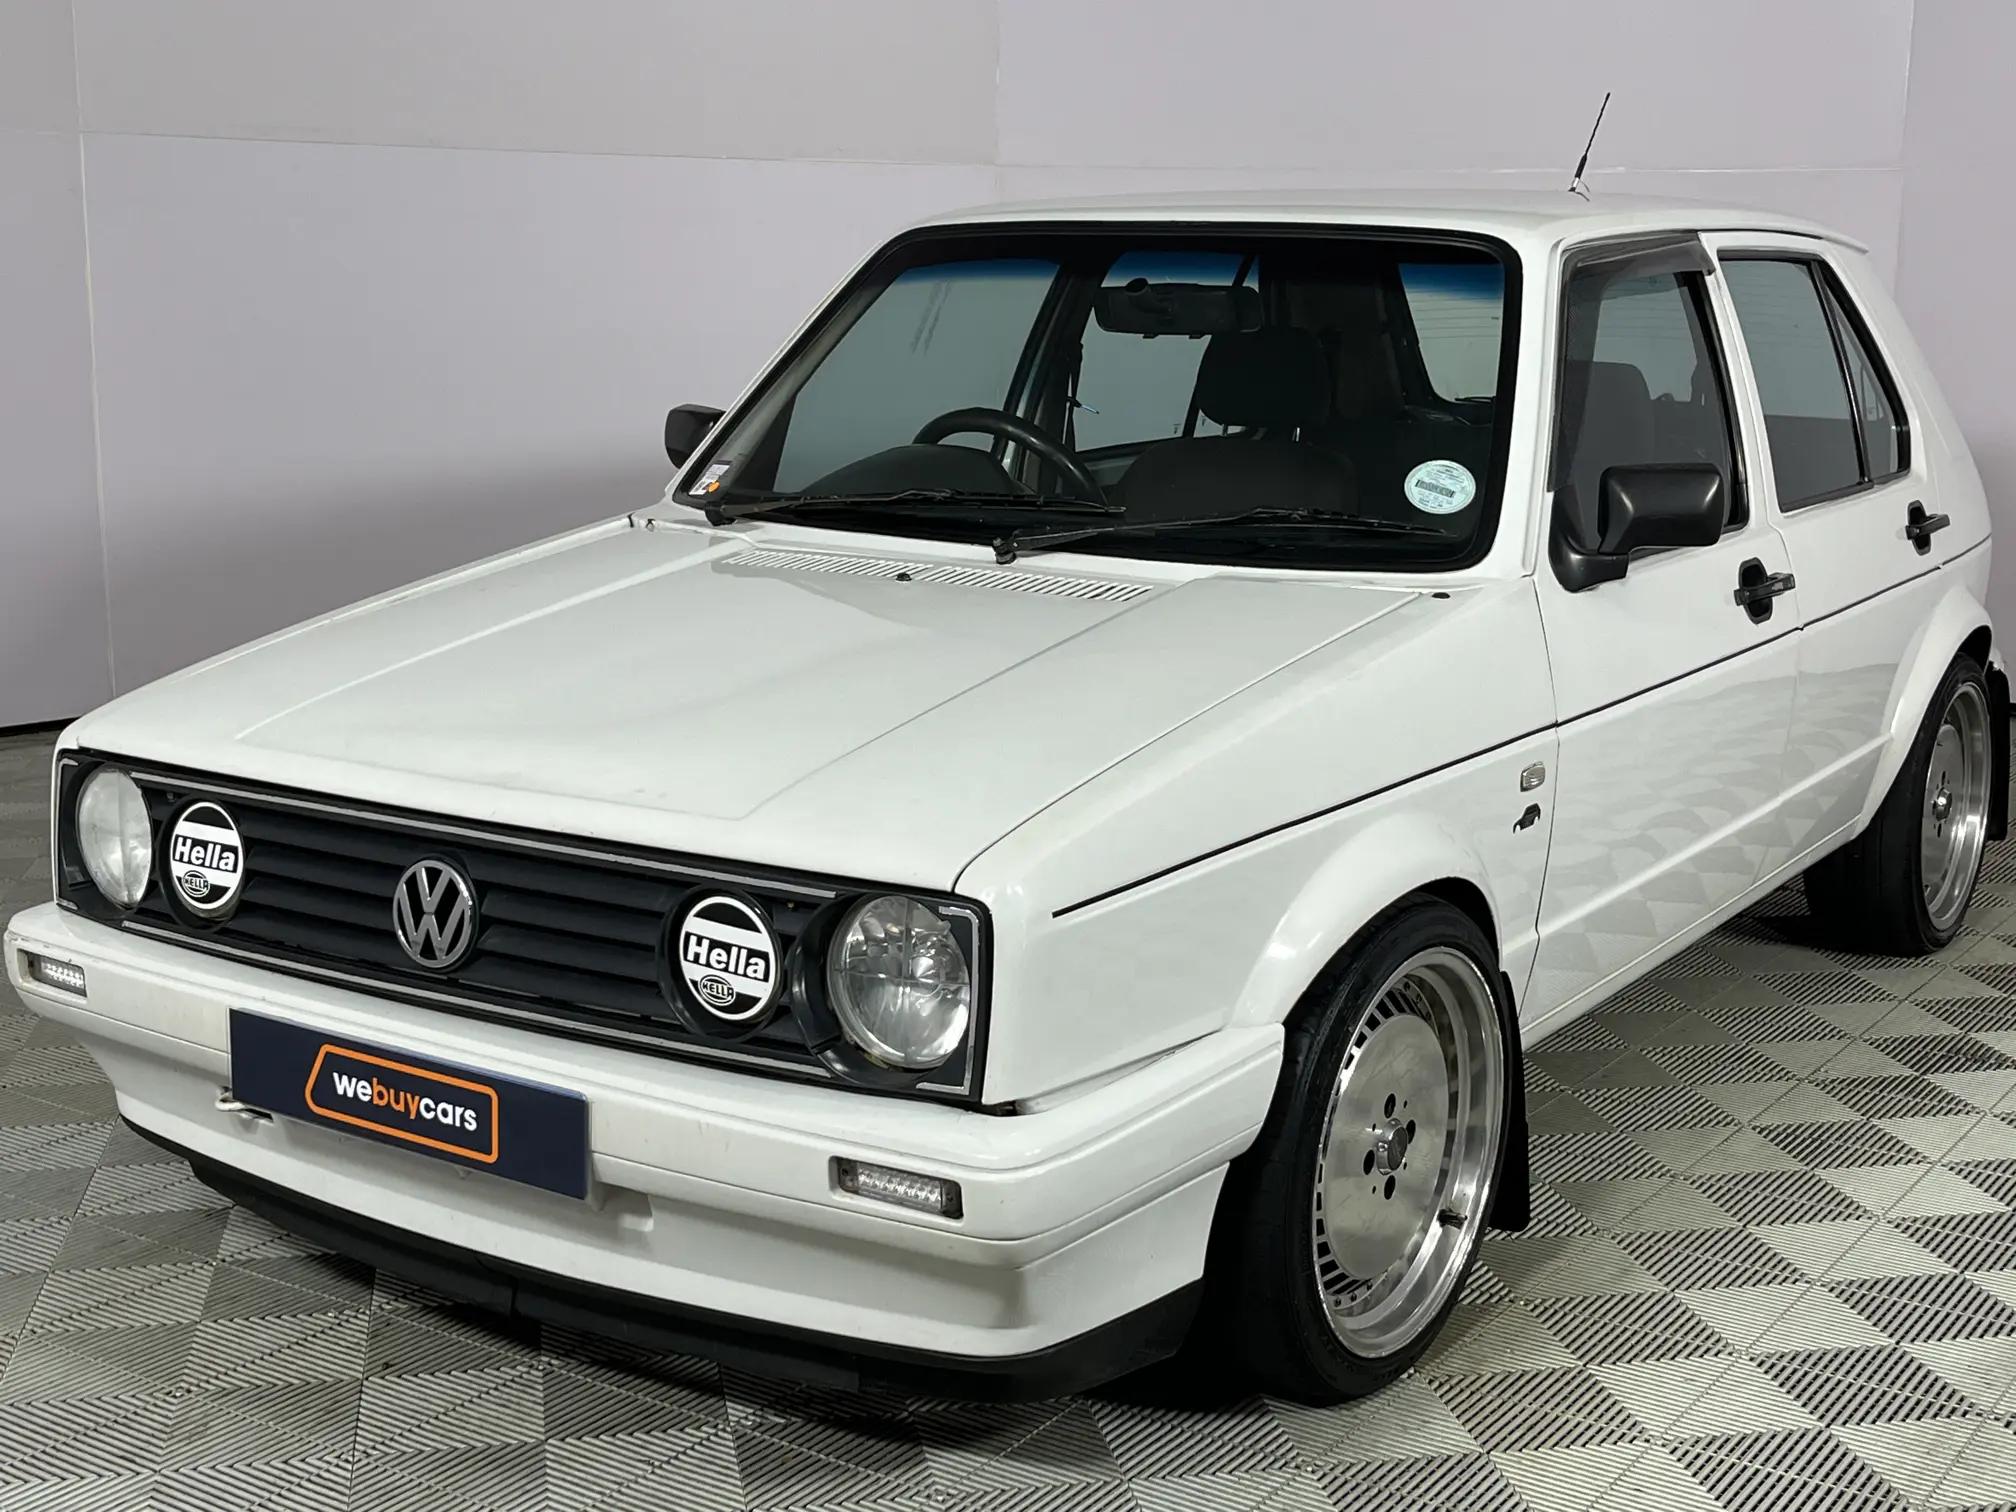 Volkswagen (VW) Citi Chico 1.6i